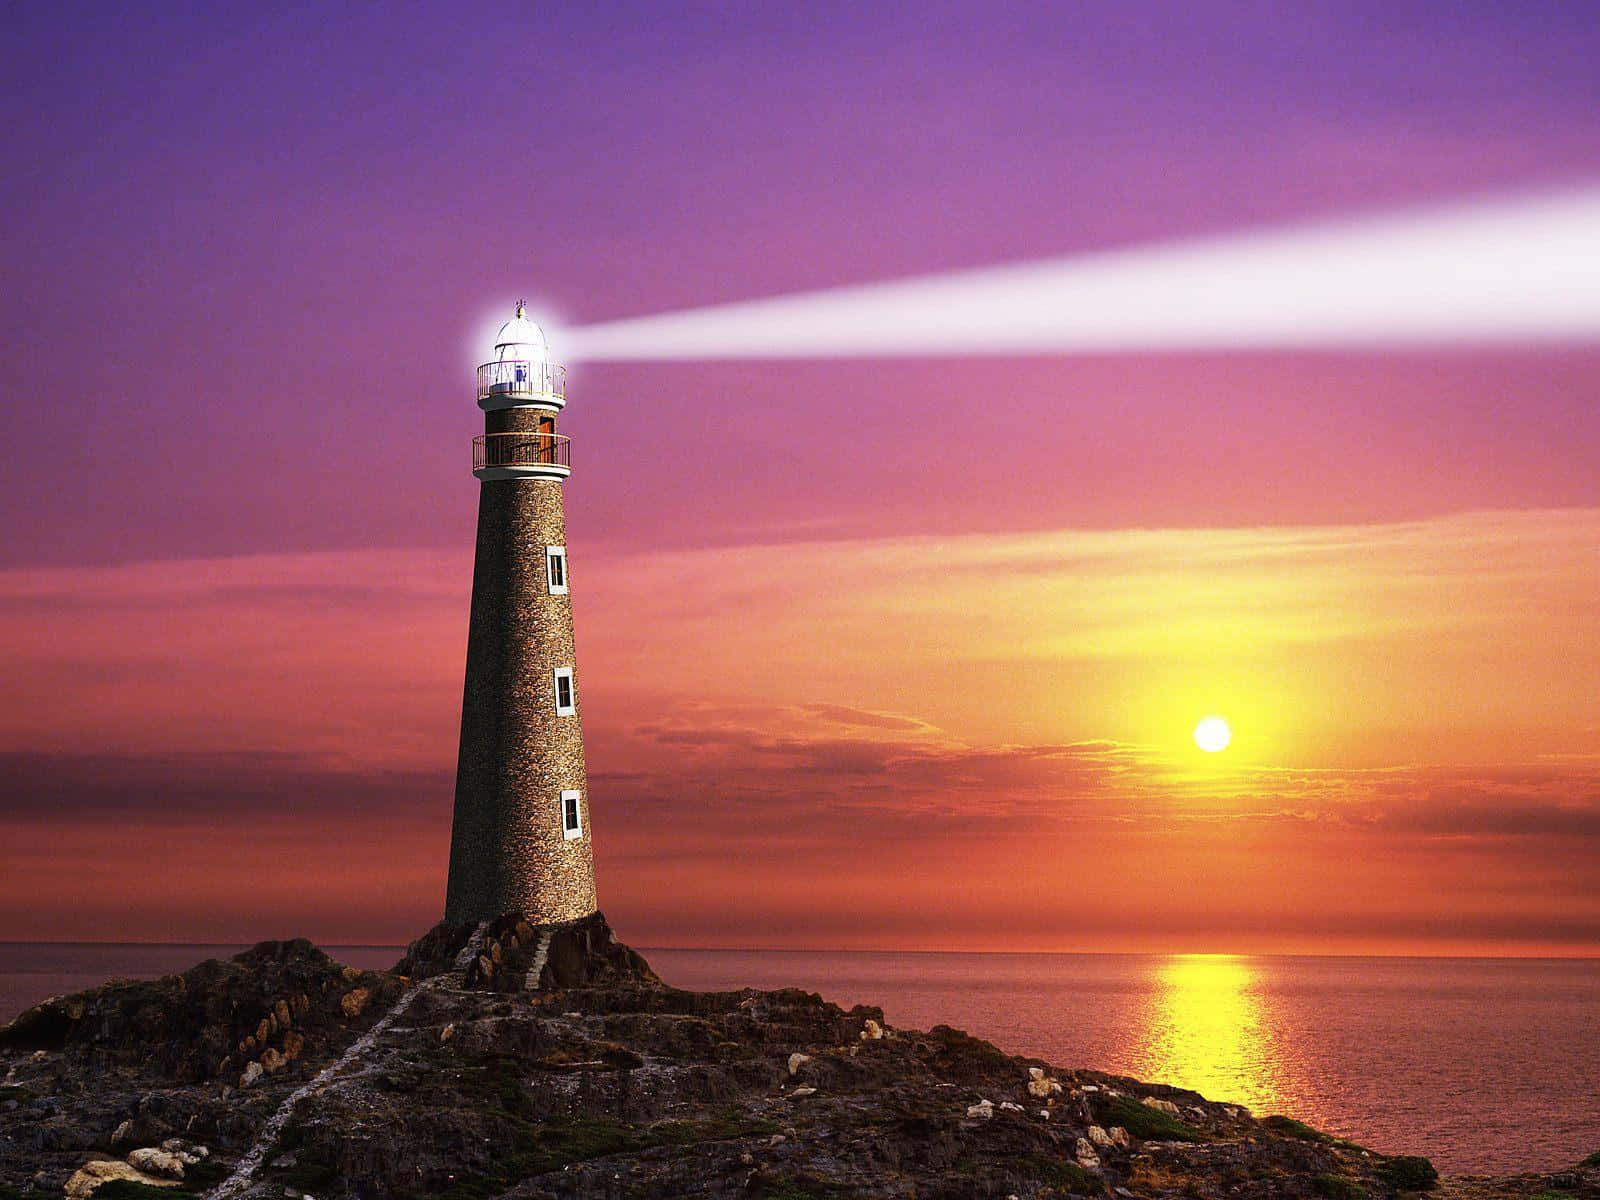 A Lighthouse On A Rock